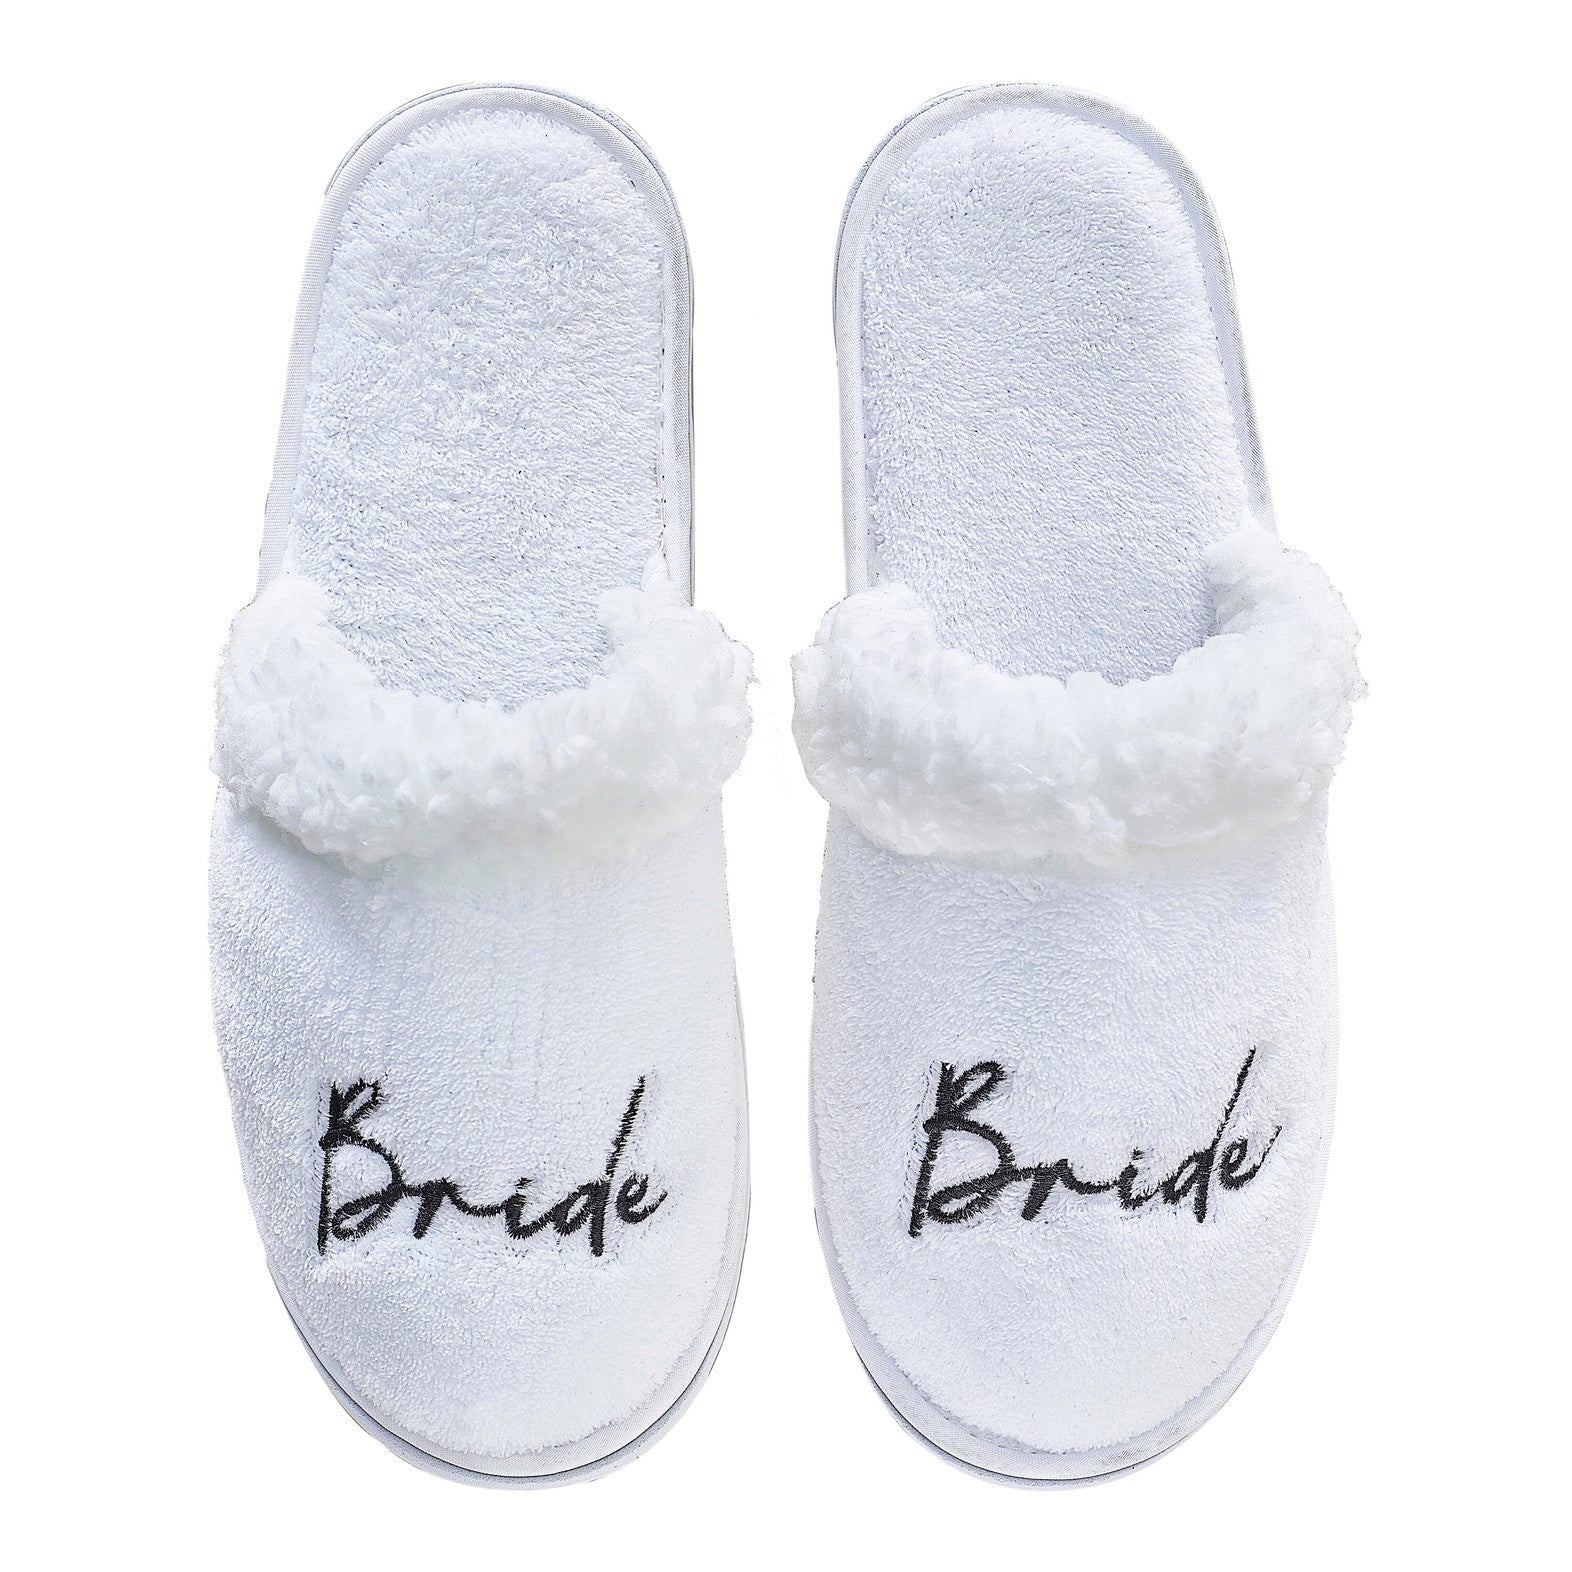 White Fluffy Bride Slippers